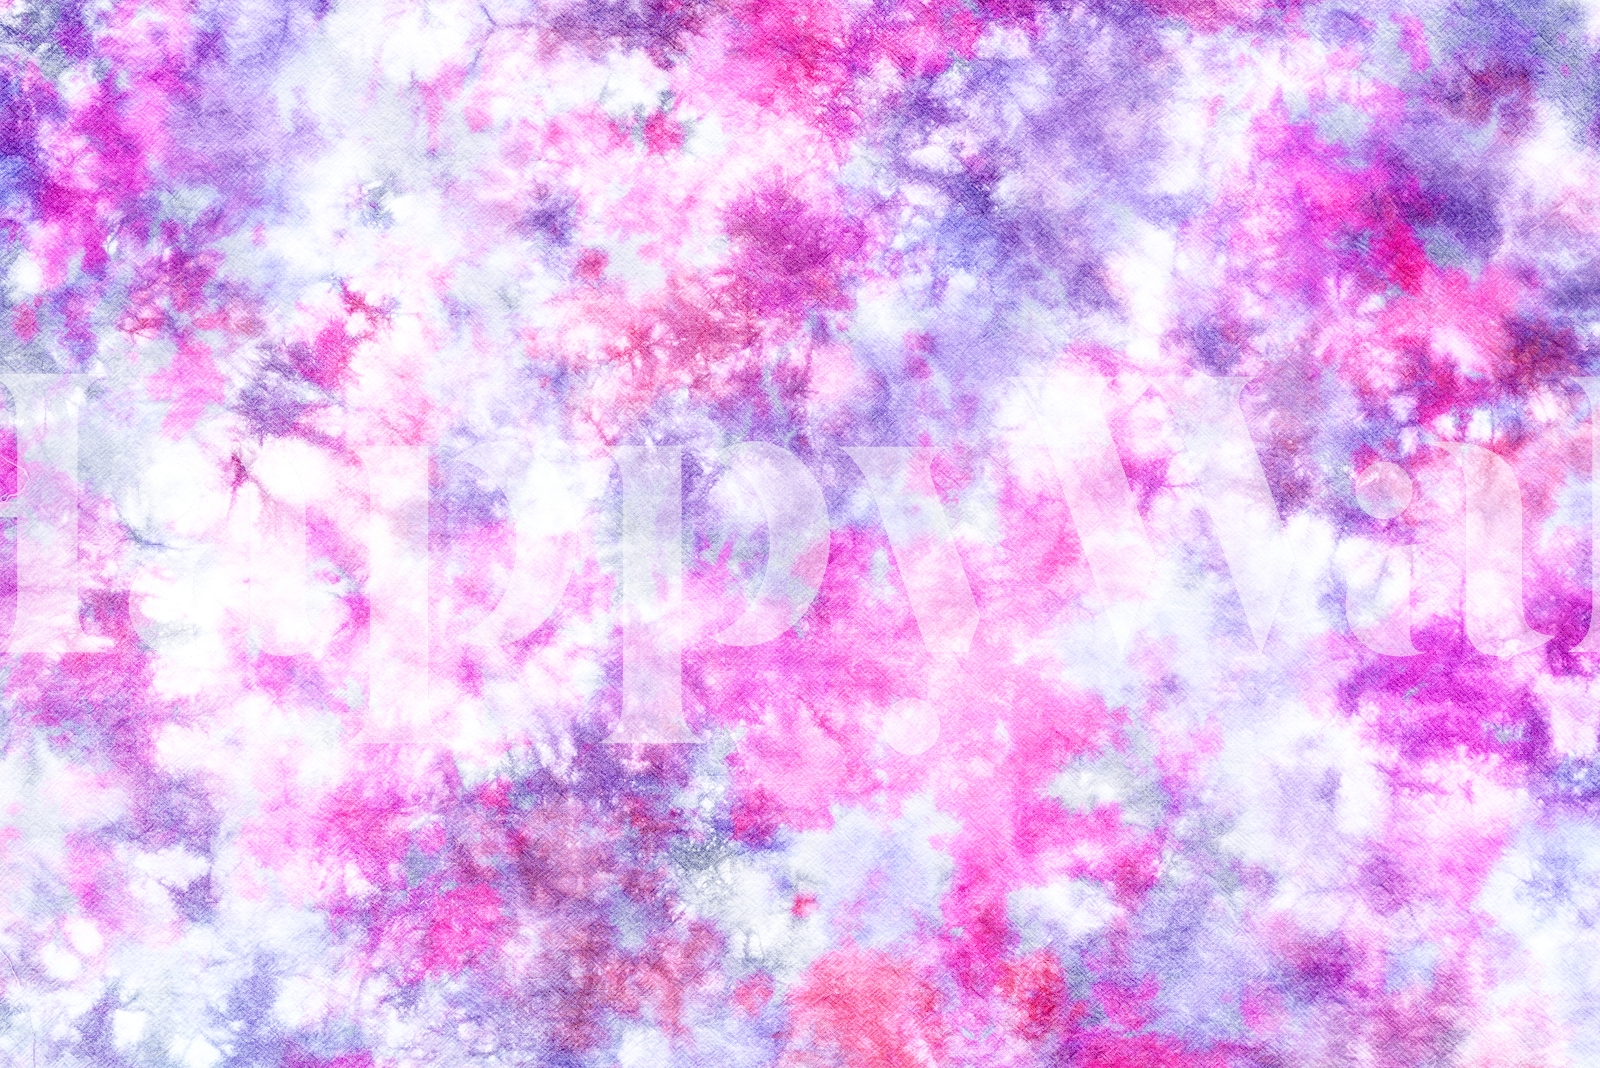 https://happywall-img-gallery.imgix.net/46779/purple_pink_tie_dye_masked.jpg